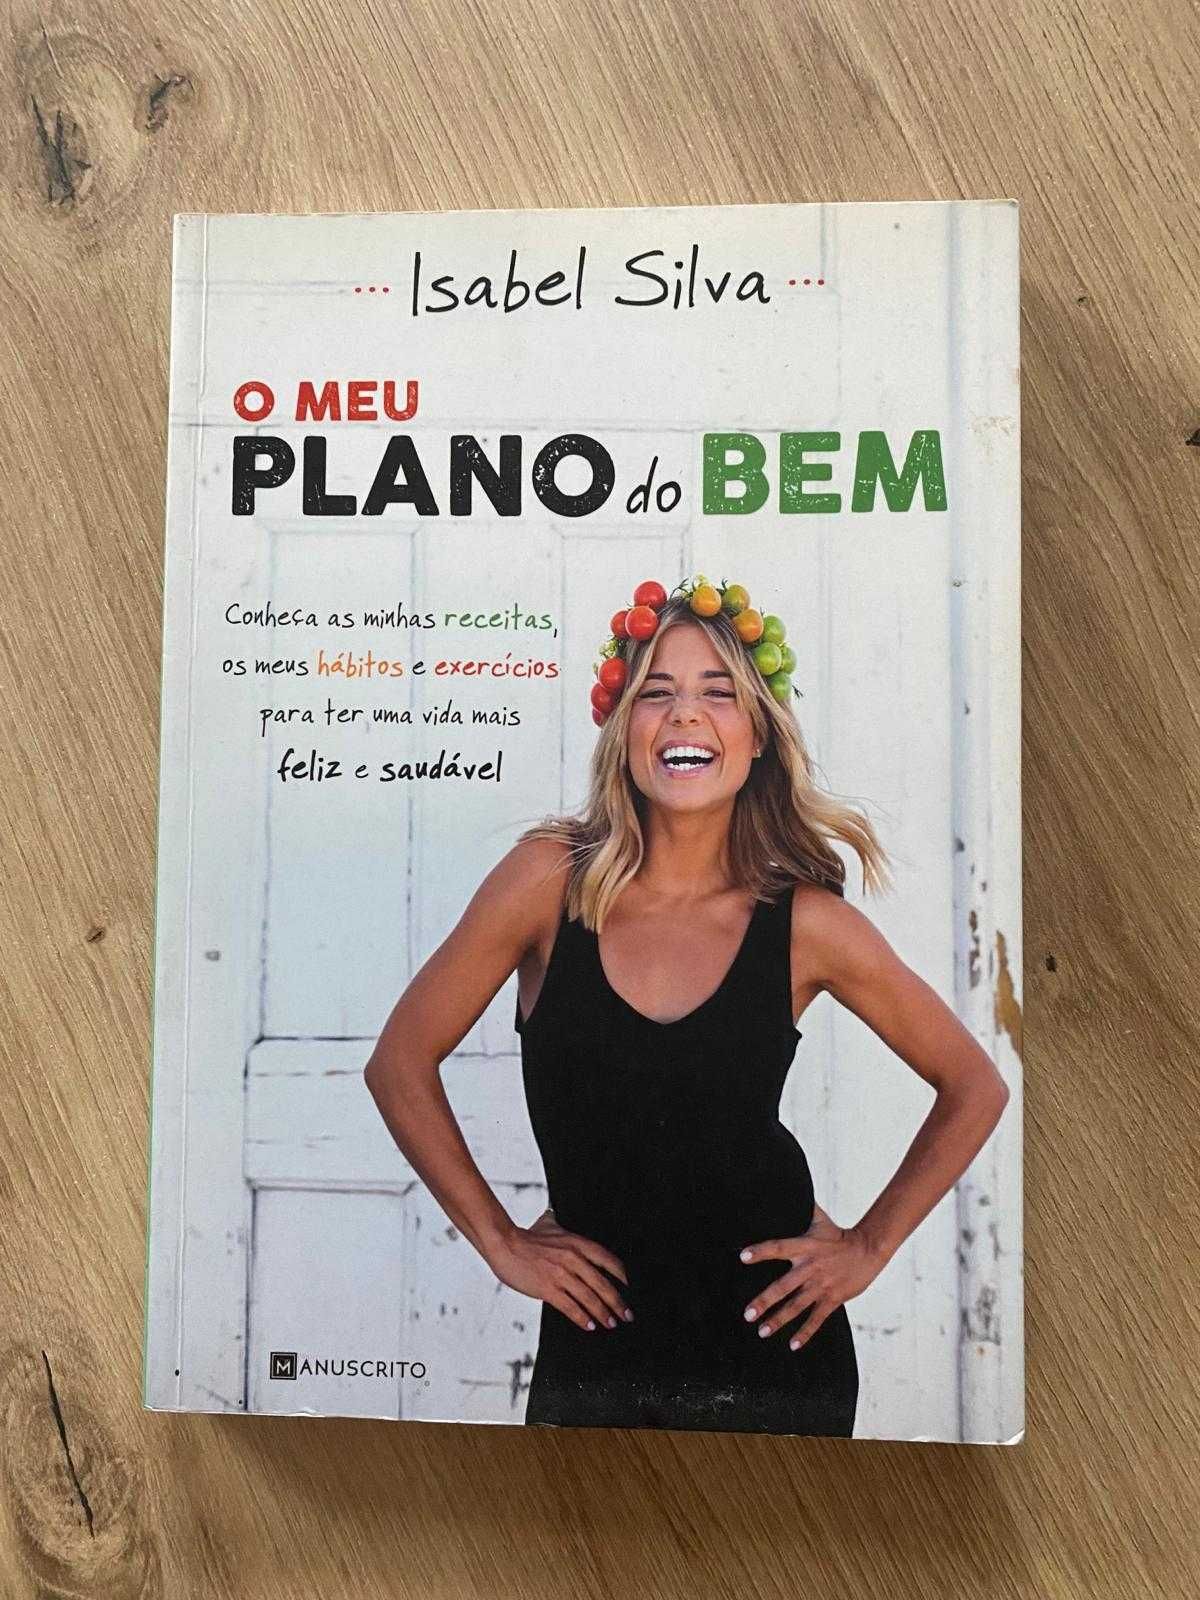 Livro Isabel Silva - "O meu plano do bem"